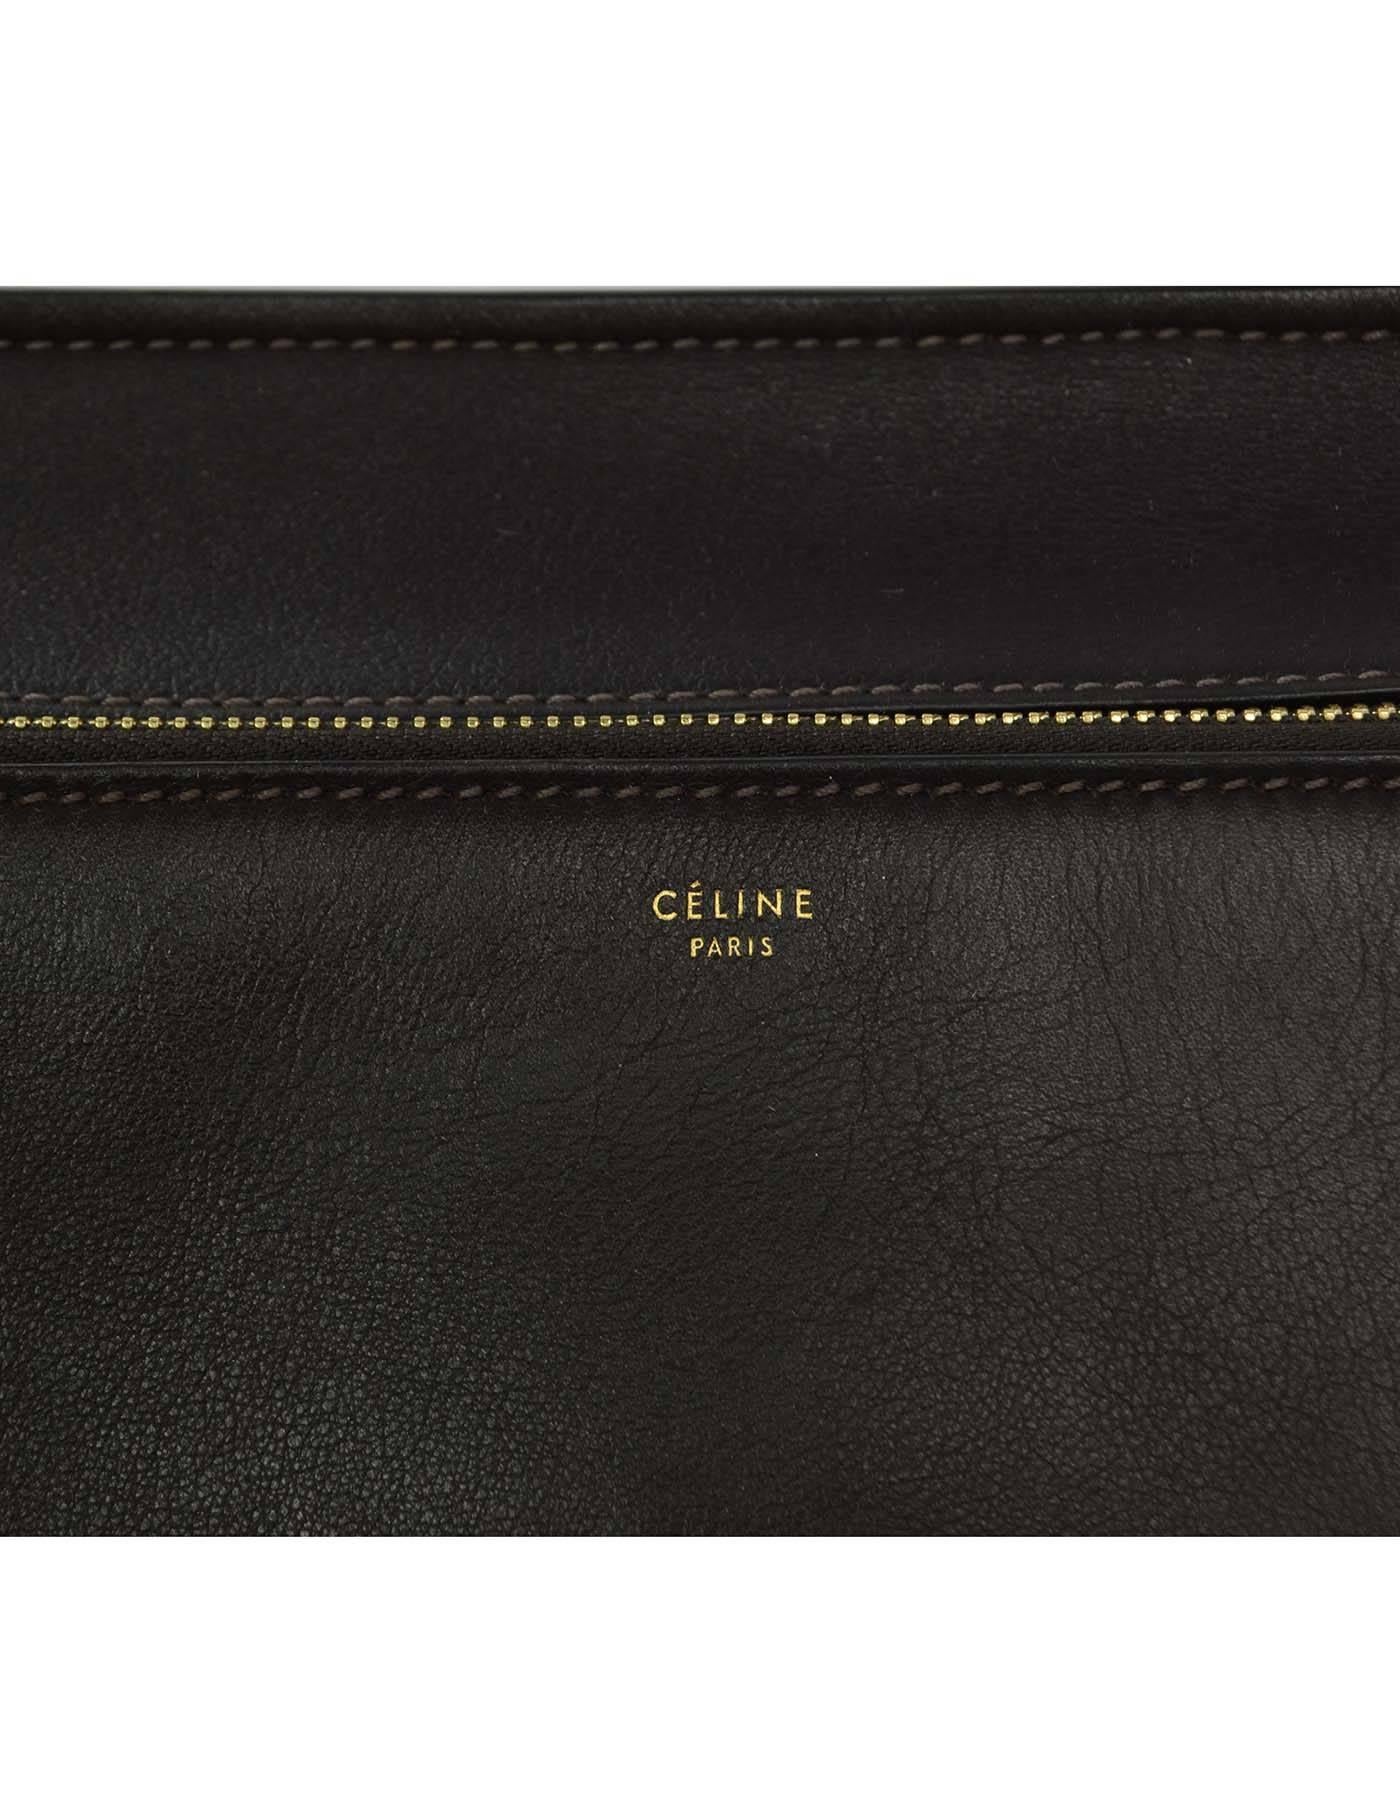 Celine Dark Brown Leather Medium Edge Tote Bag GHW rt $2, 600 1